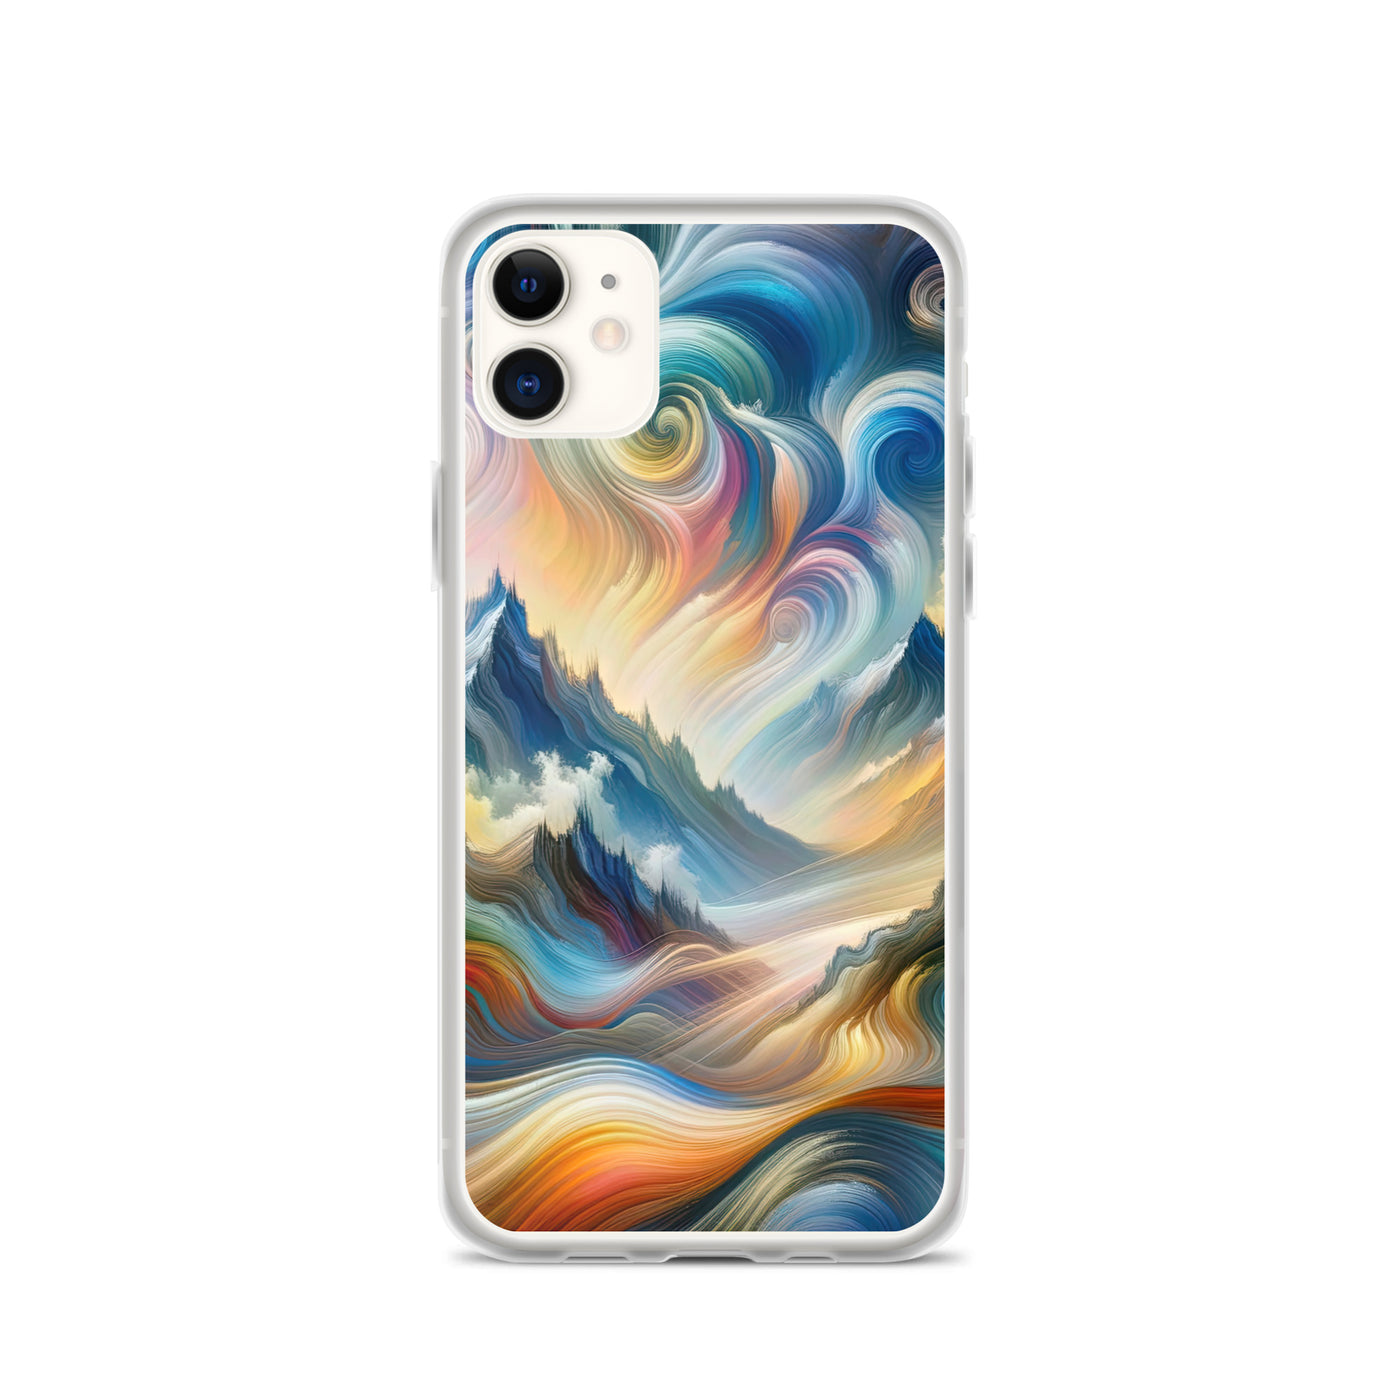 Ätherische schöne Alpen in lebendigen Farbwirbeln - Abstrakte Berge - iPhone Schutzhülle (durchsichtig) berge xxx yyy zzz iPhone 11